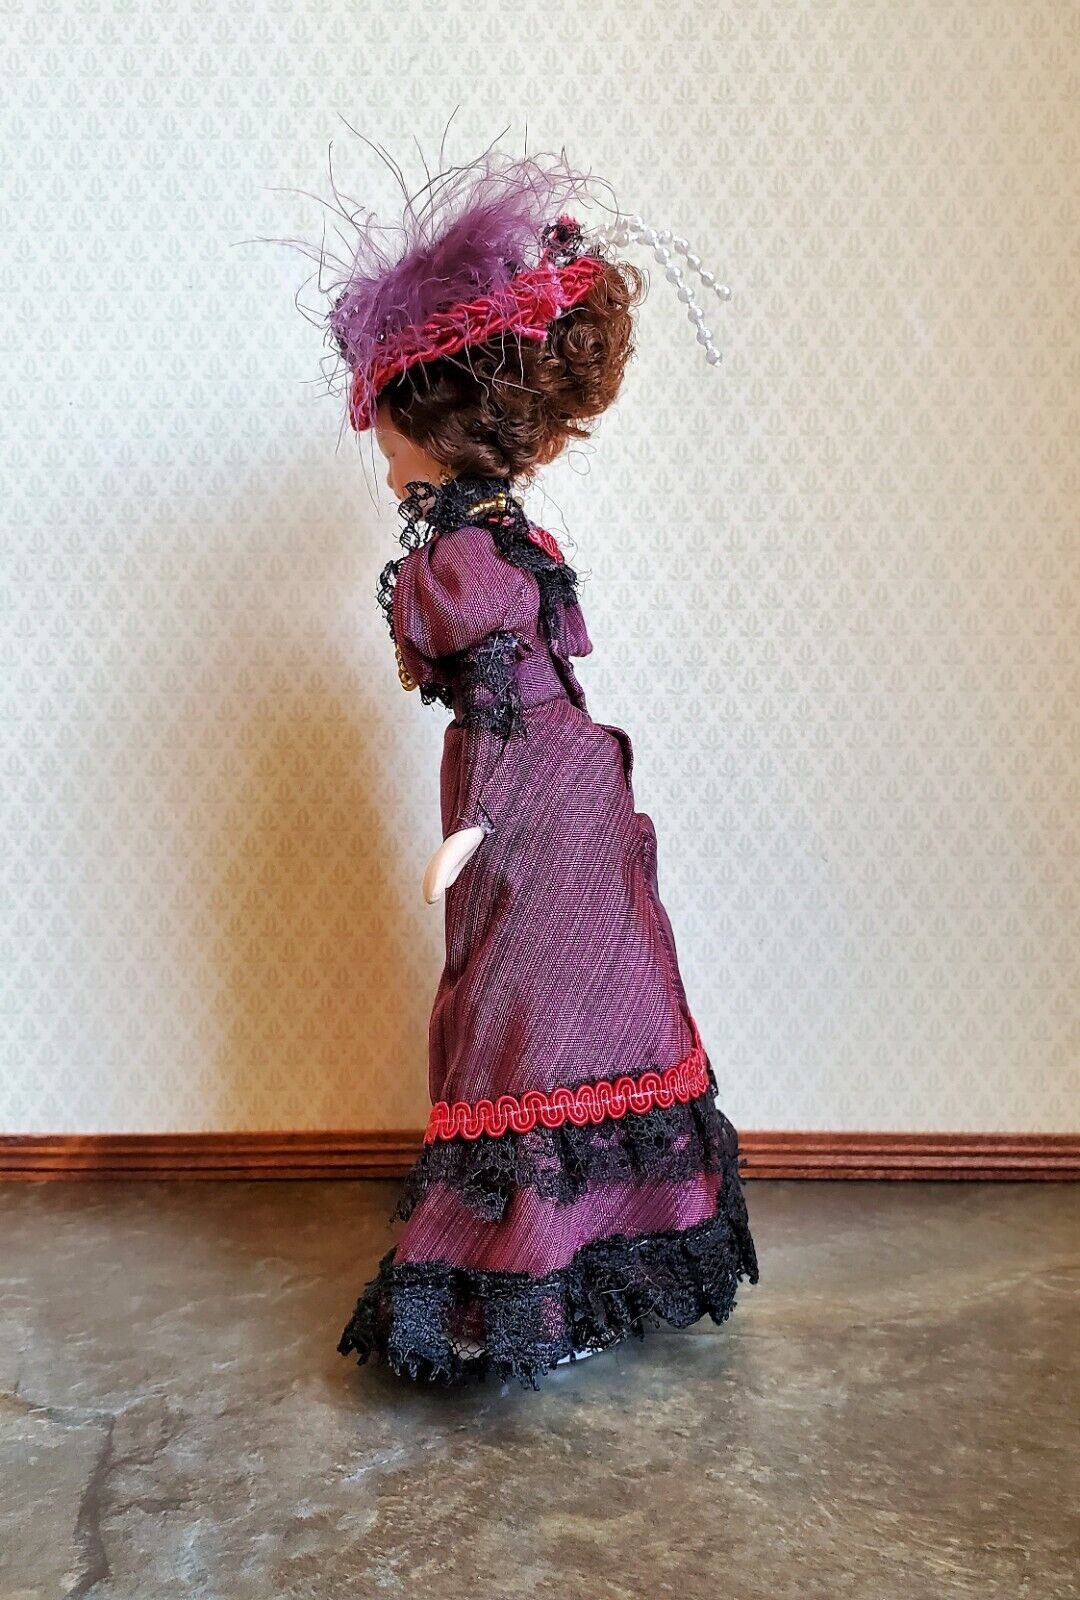 Dollhouse Miniature Victorian Doll Porcelain Fancy Maroon Dress /& Hat 1:12 Scale